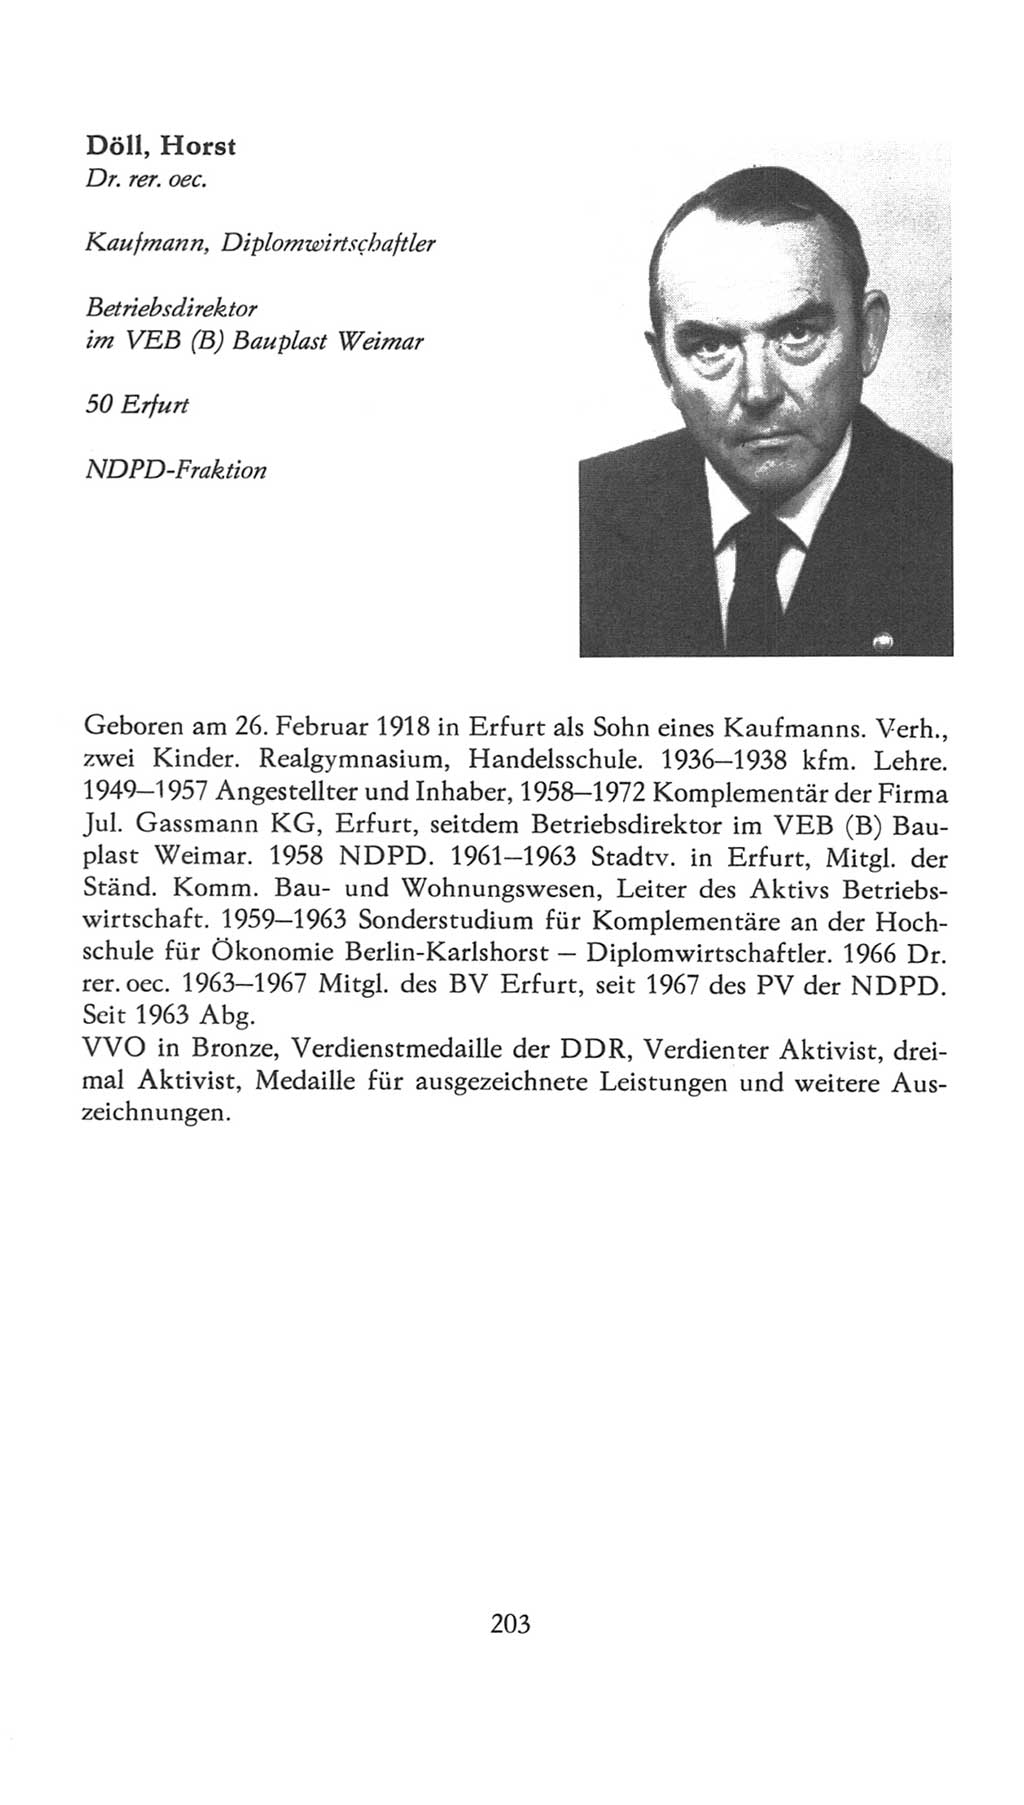 Volkskammer (VK) der Deutschen Demokratischen Republik (DDR), 7. Wahlperiode 1976-1981, Seite 203 (VK. DDR 7. WP. 1976-1981, S. 203)